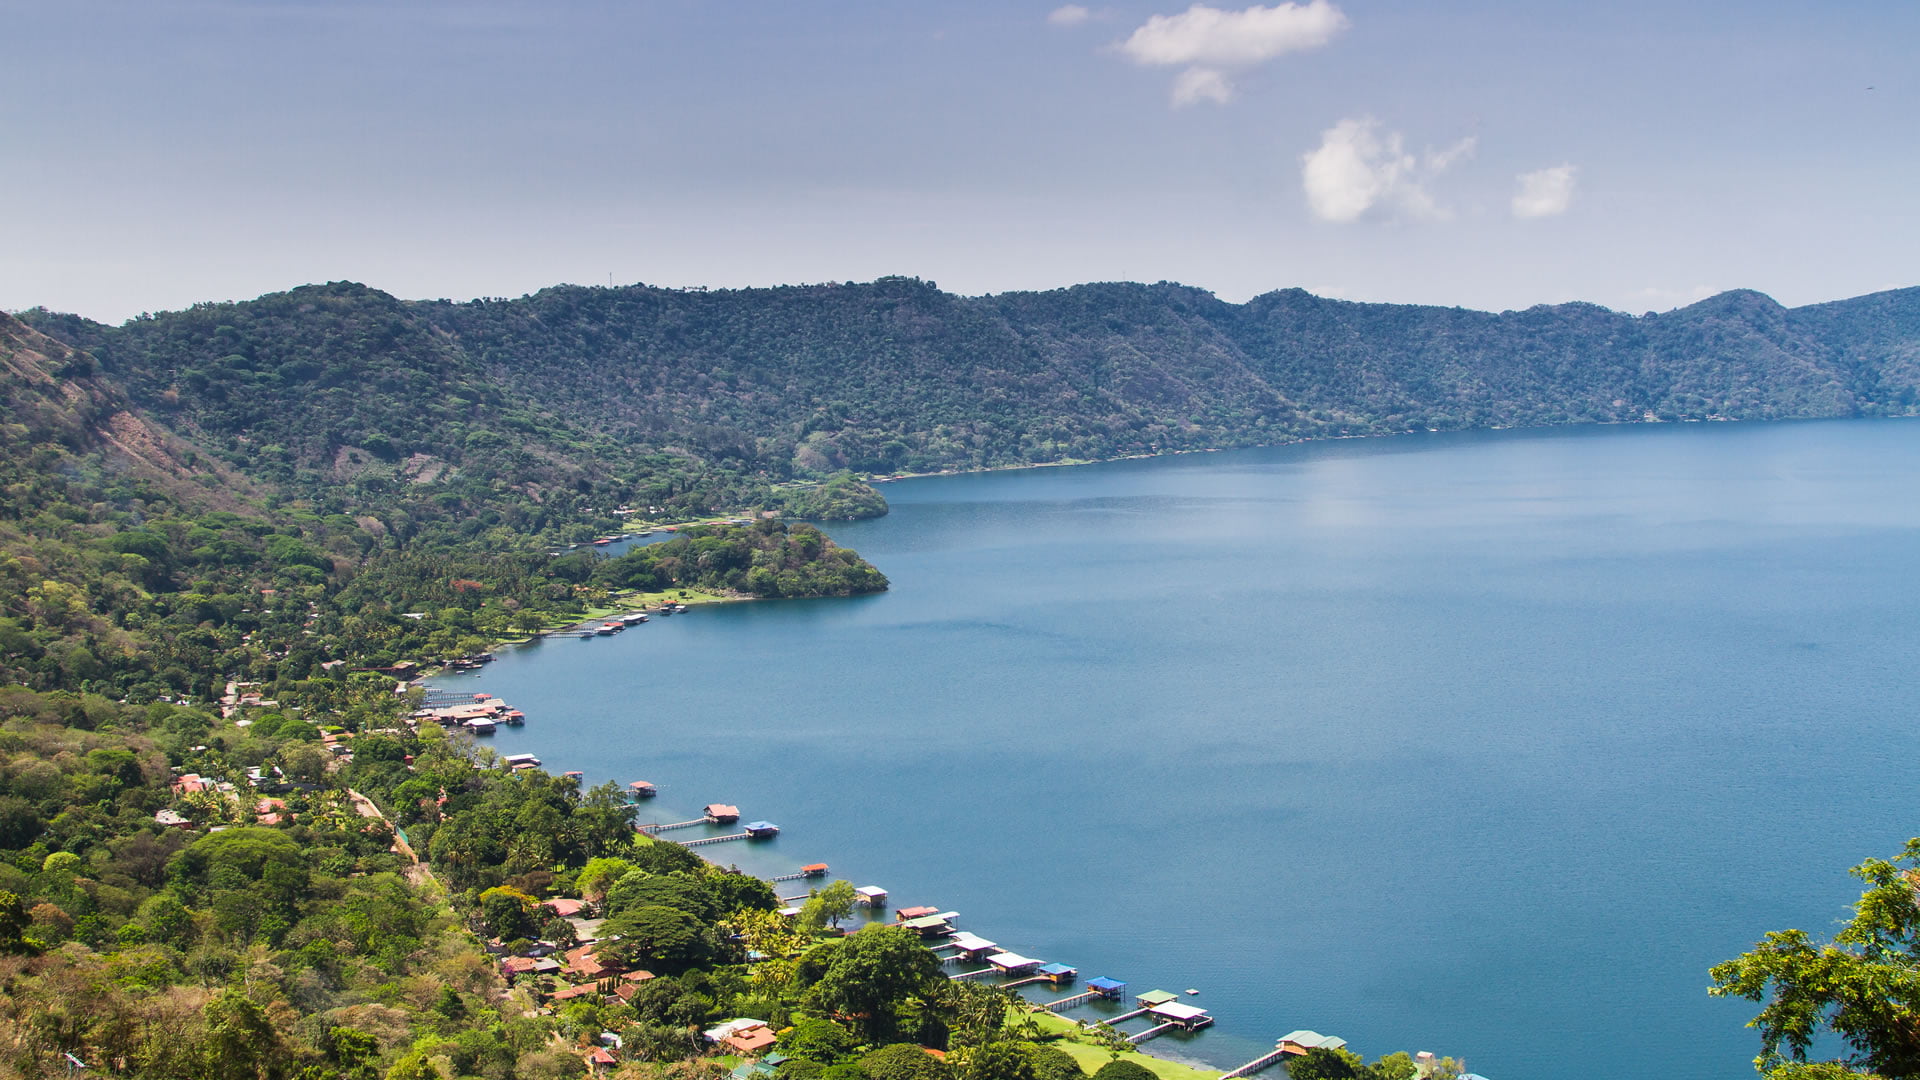 Lake Coatepeque (El Salvador)